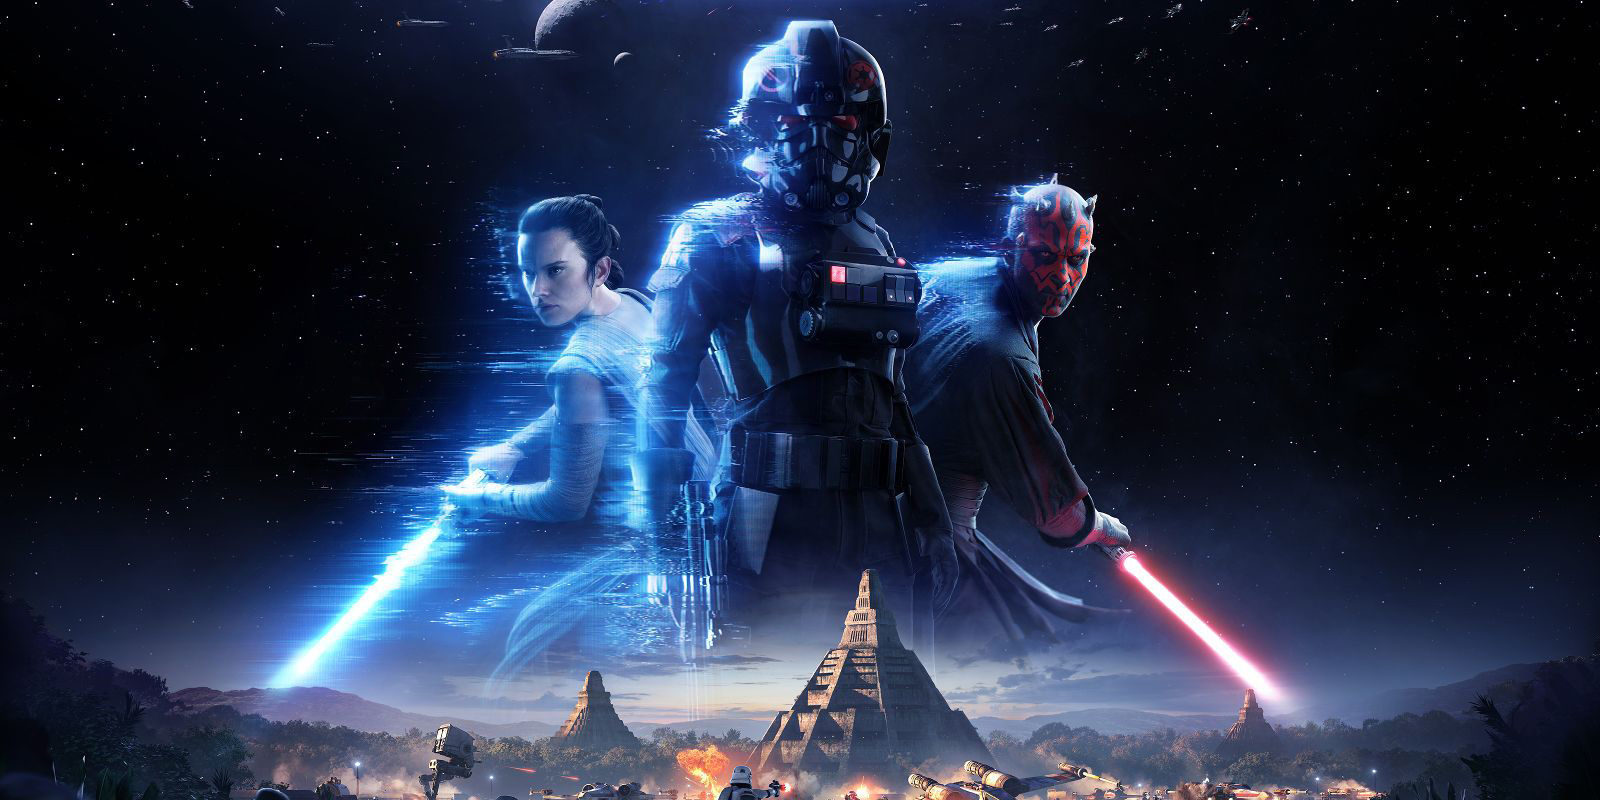 'Star Wars Battlefront II': amenazas, insultos a desarrolladores y nuestro futuro como comunidad